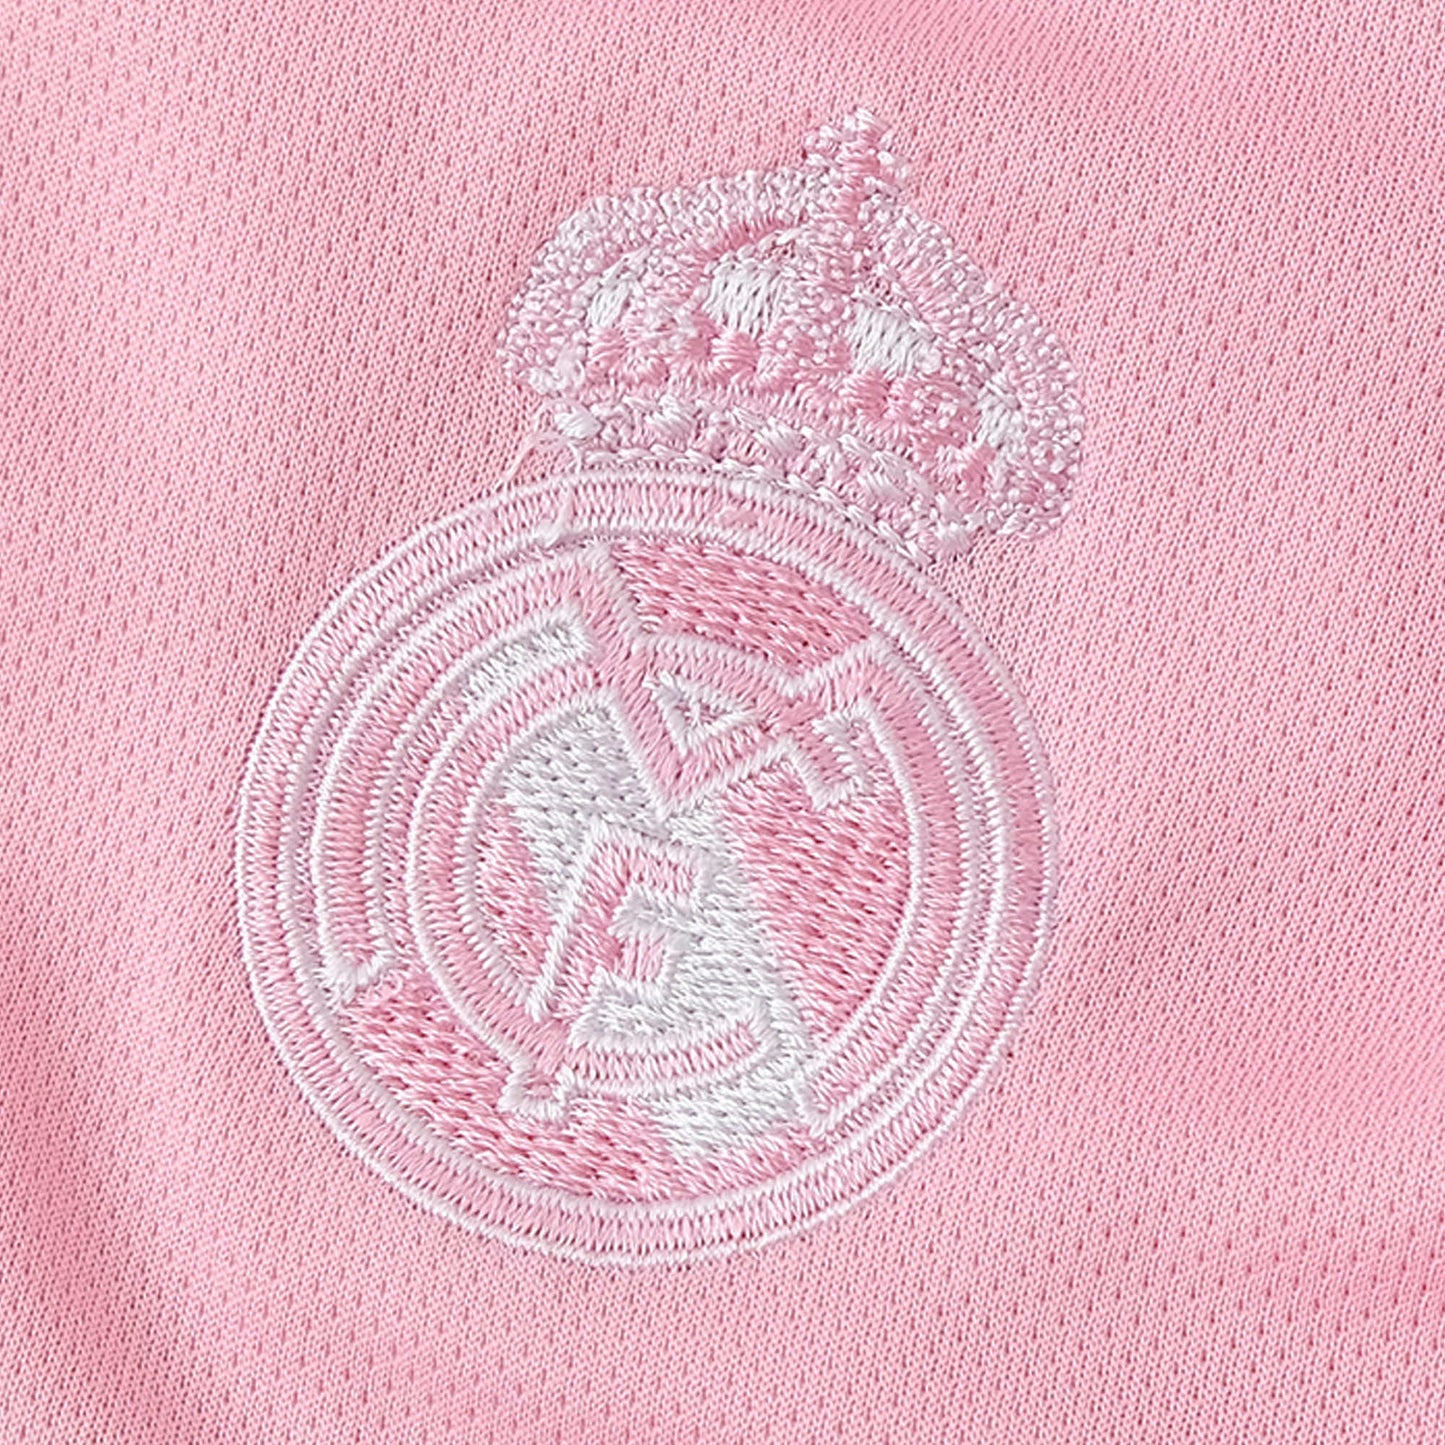 Real Madrid 23/24 Kids "Pink Dragon" Kit